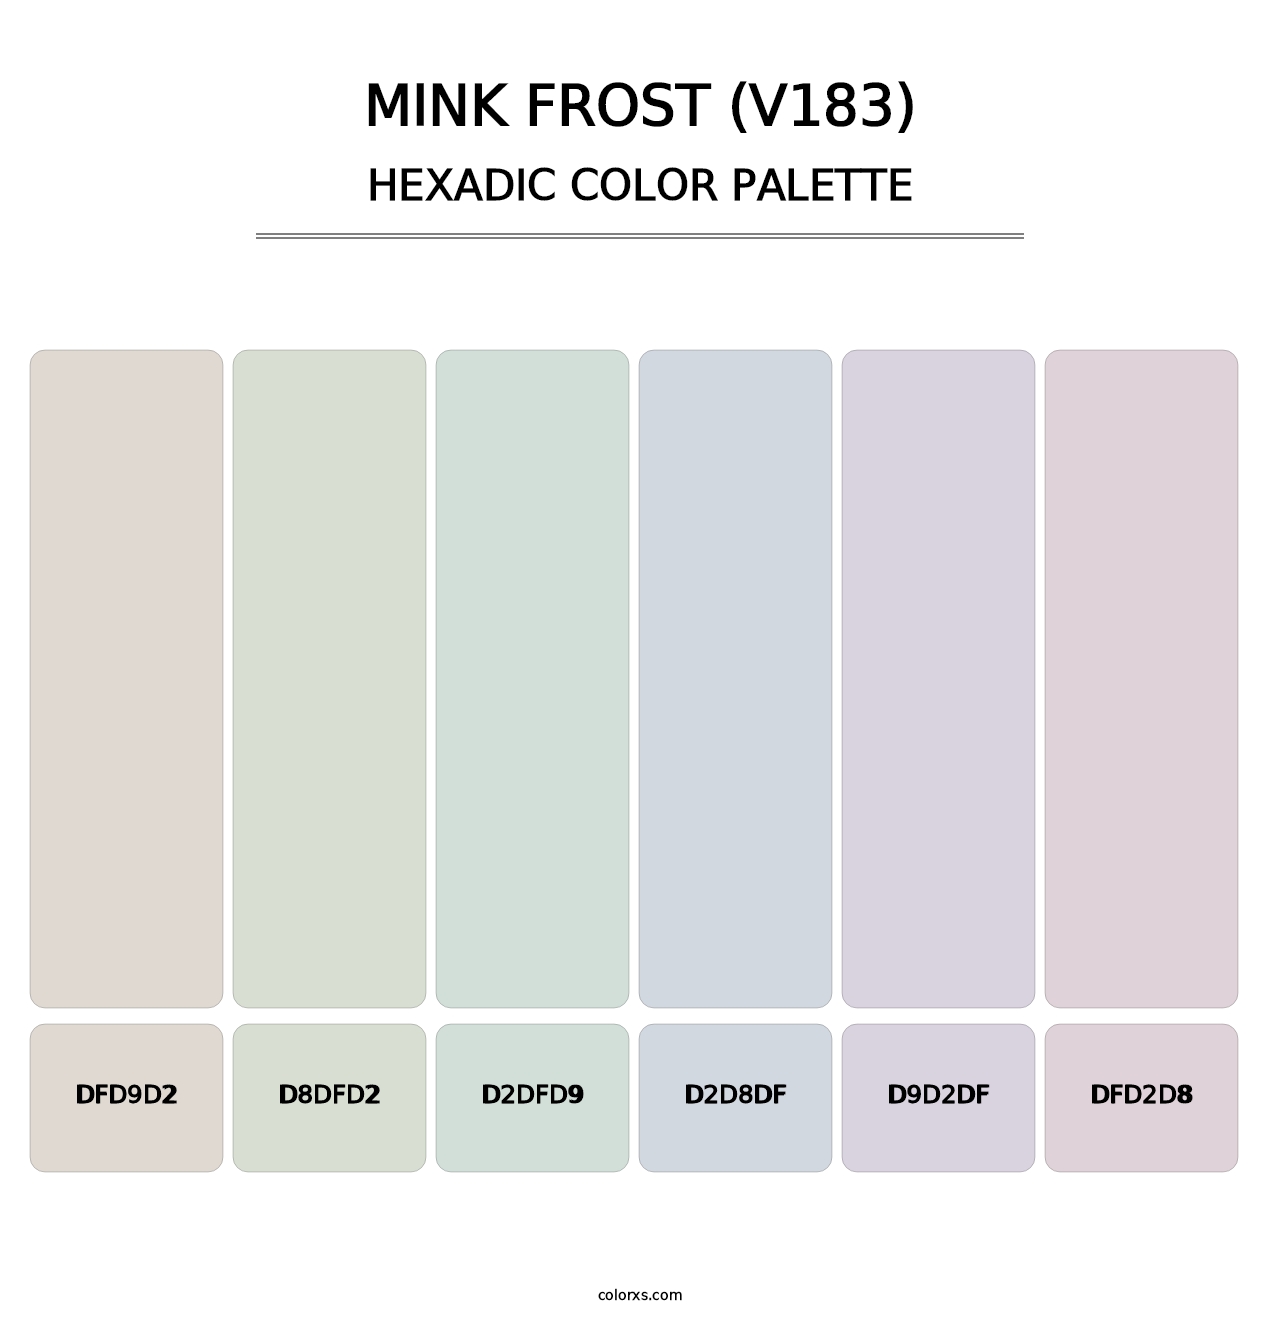 Mink Frost (V183) - Hexadic Color Palette